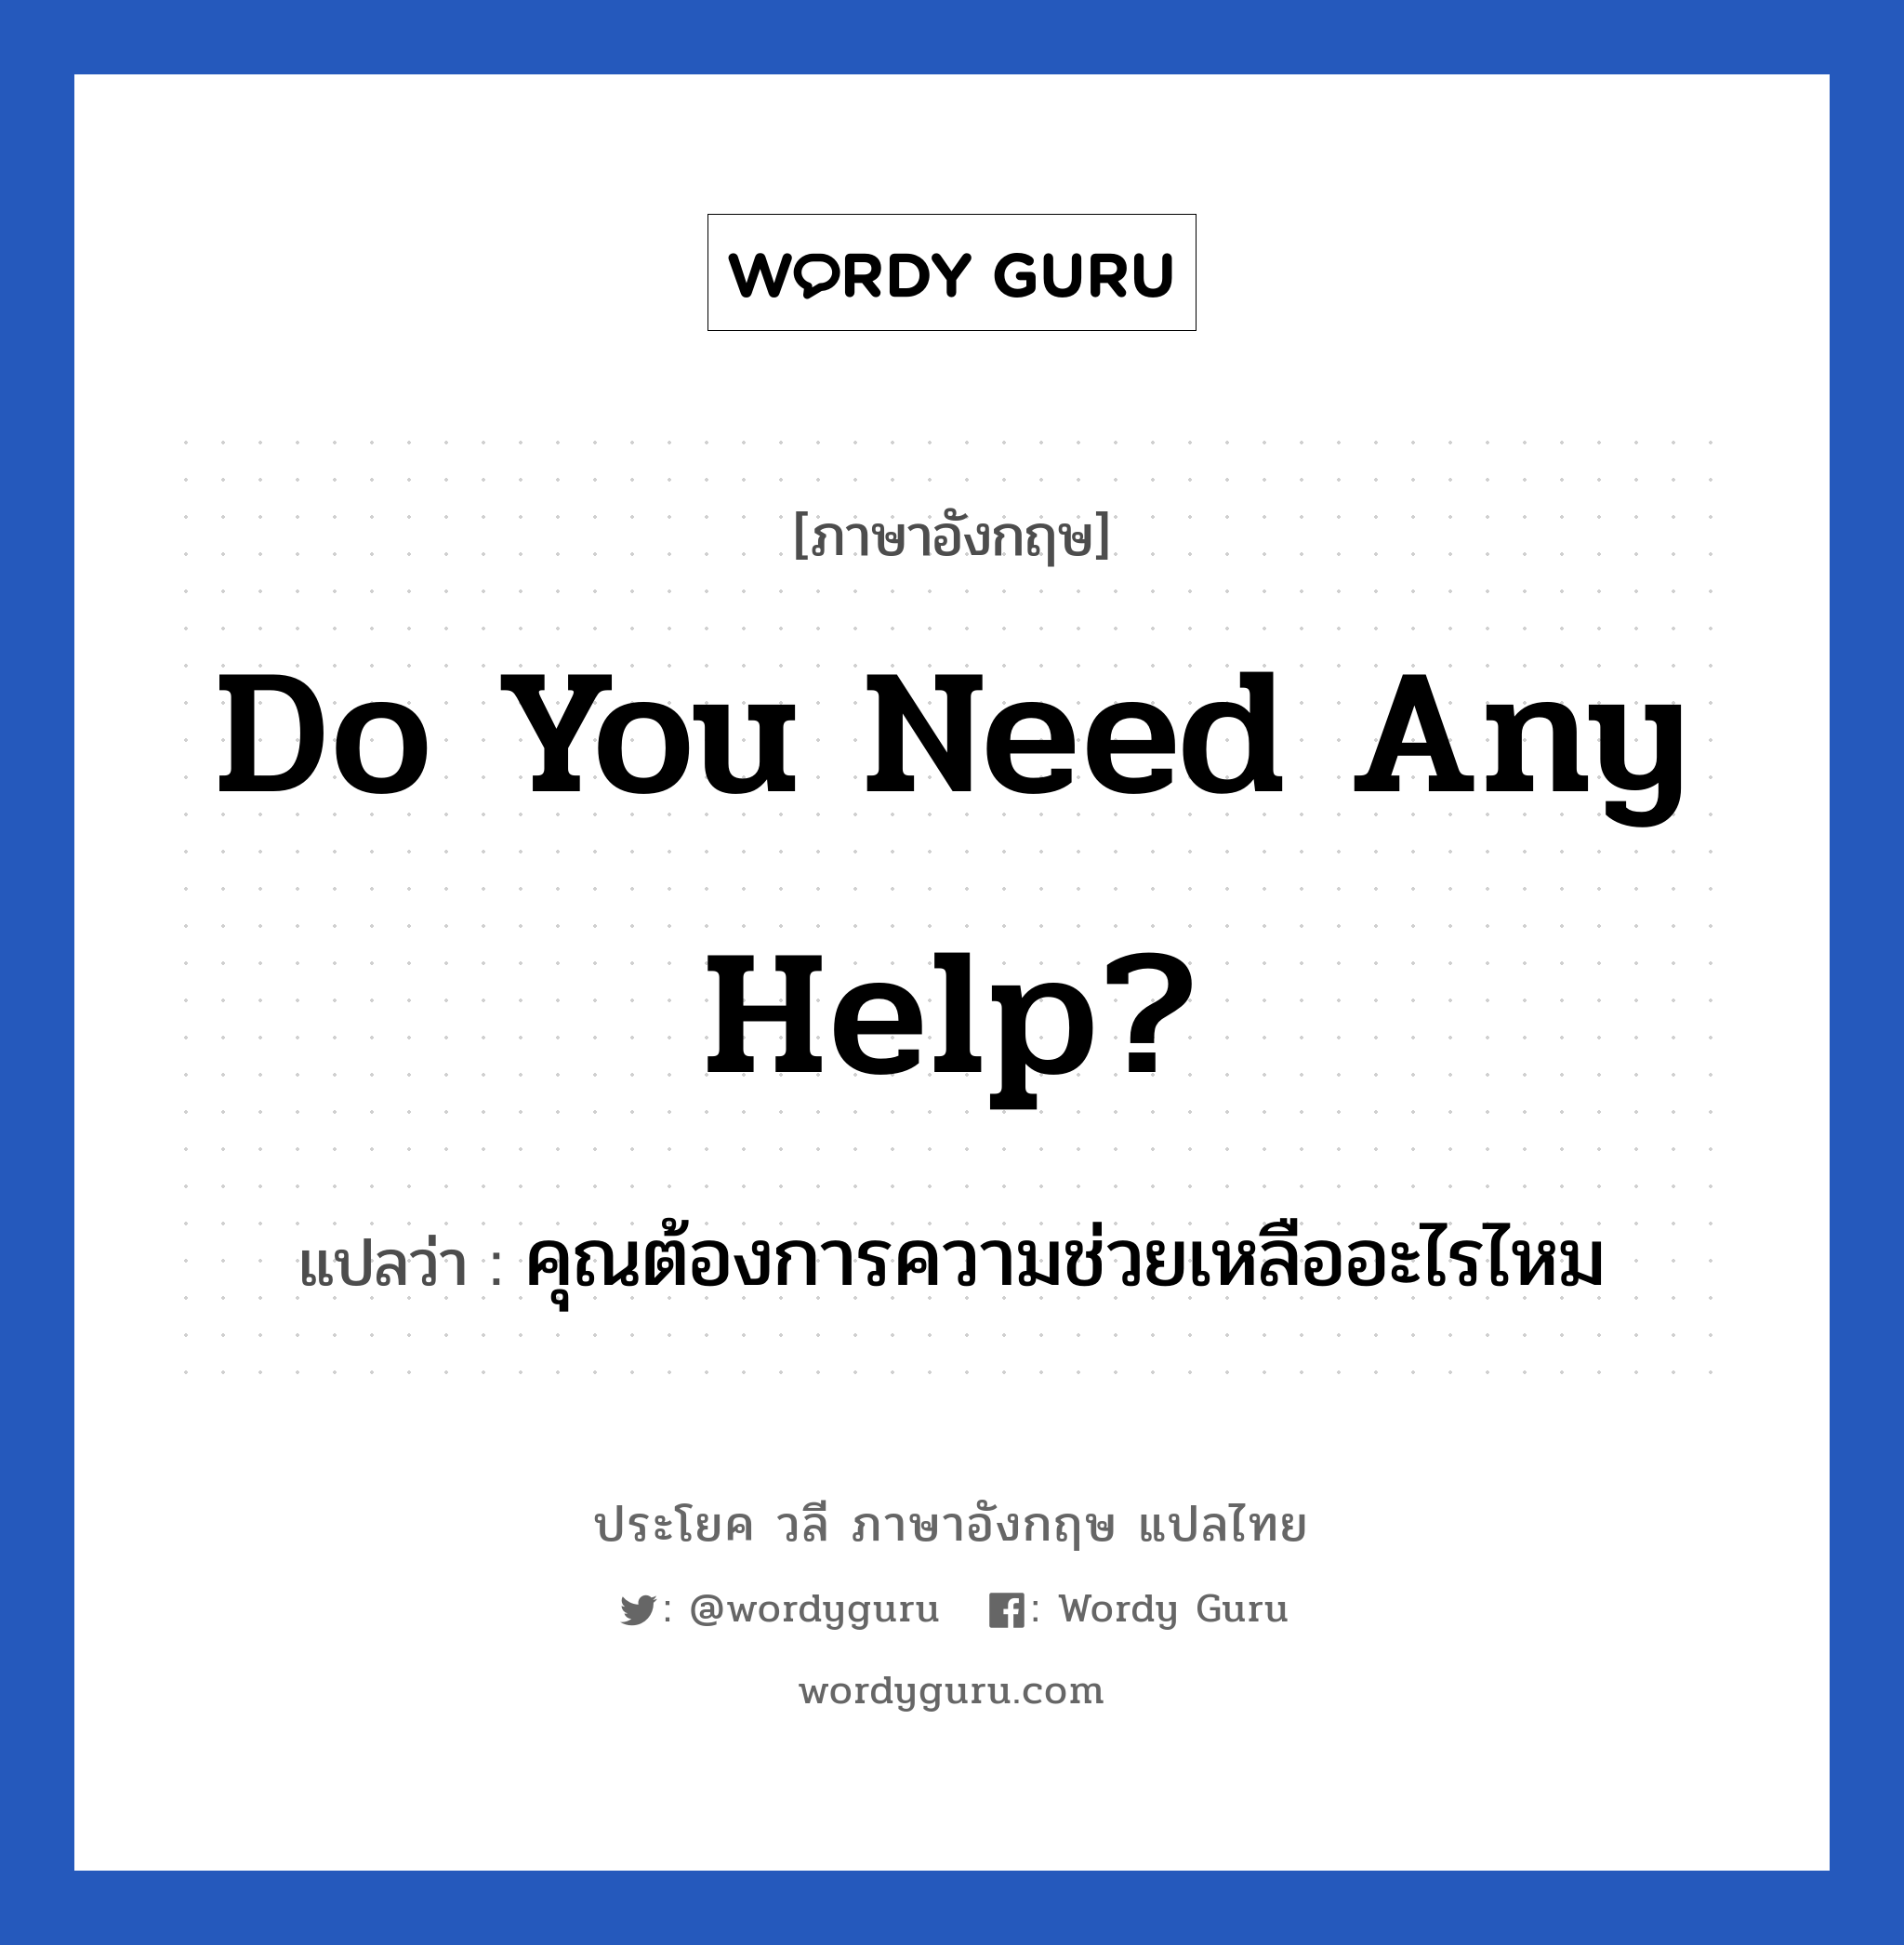 คุณต้องการความช่วยเหลืออะไรไหม ภาษาอังกฤษ?, วลีภาษาอังกฤษ คุณต้องการความช่วยเหลืออะไรไหม แปลว่า Do you need any help?